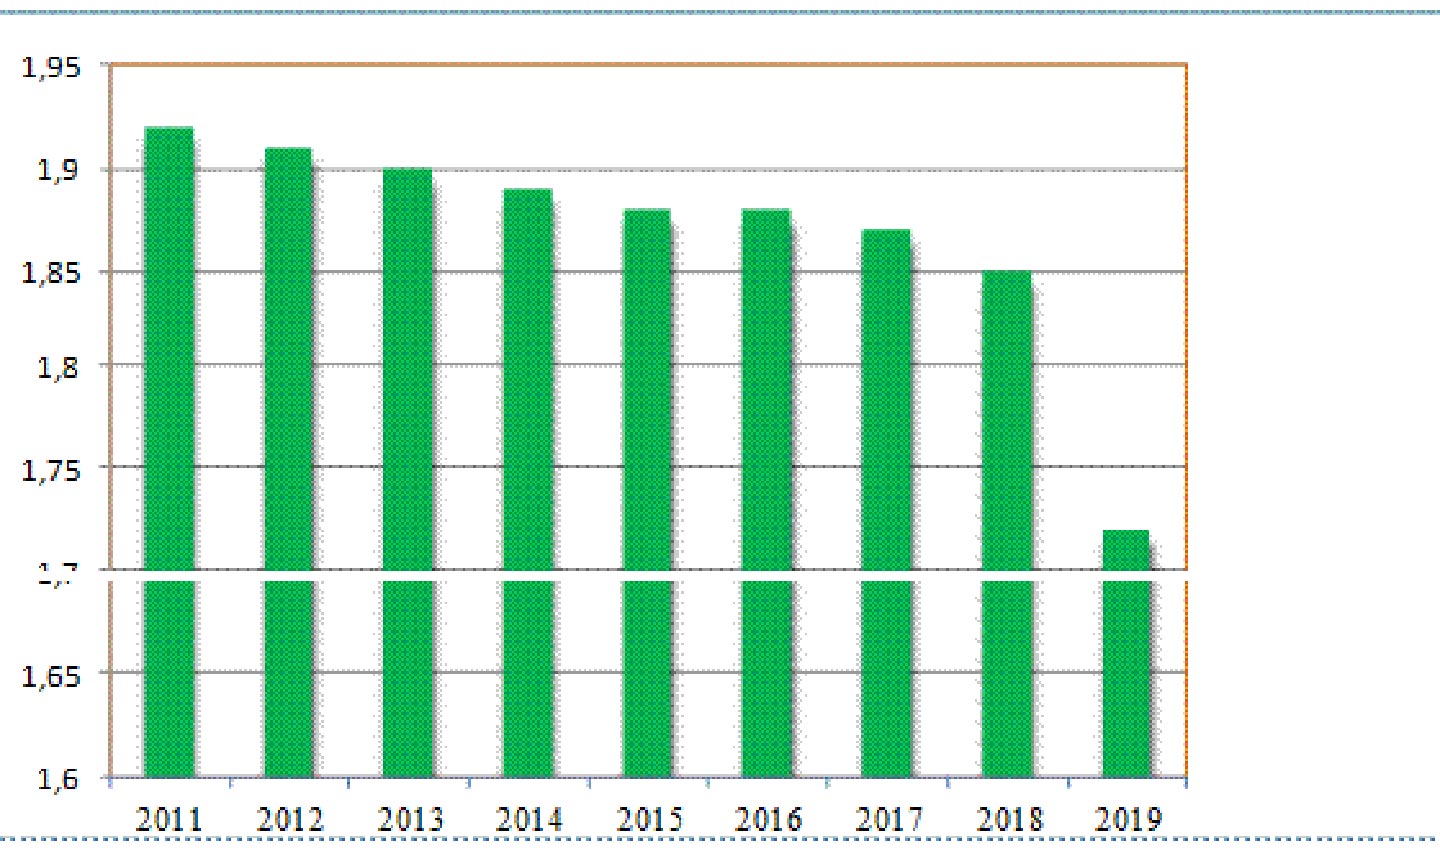  Biểu đồ tổng tỷ suất sinh của Tiền Giang giai đoạn 2011 - 2019 